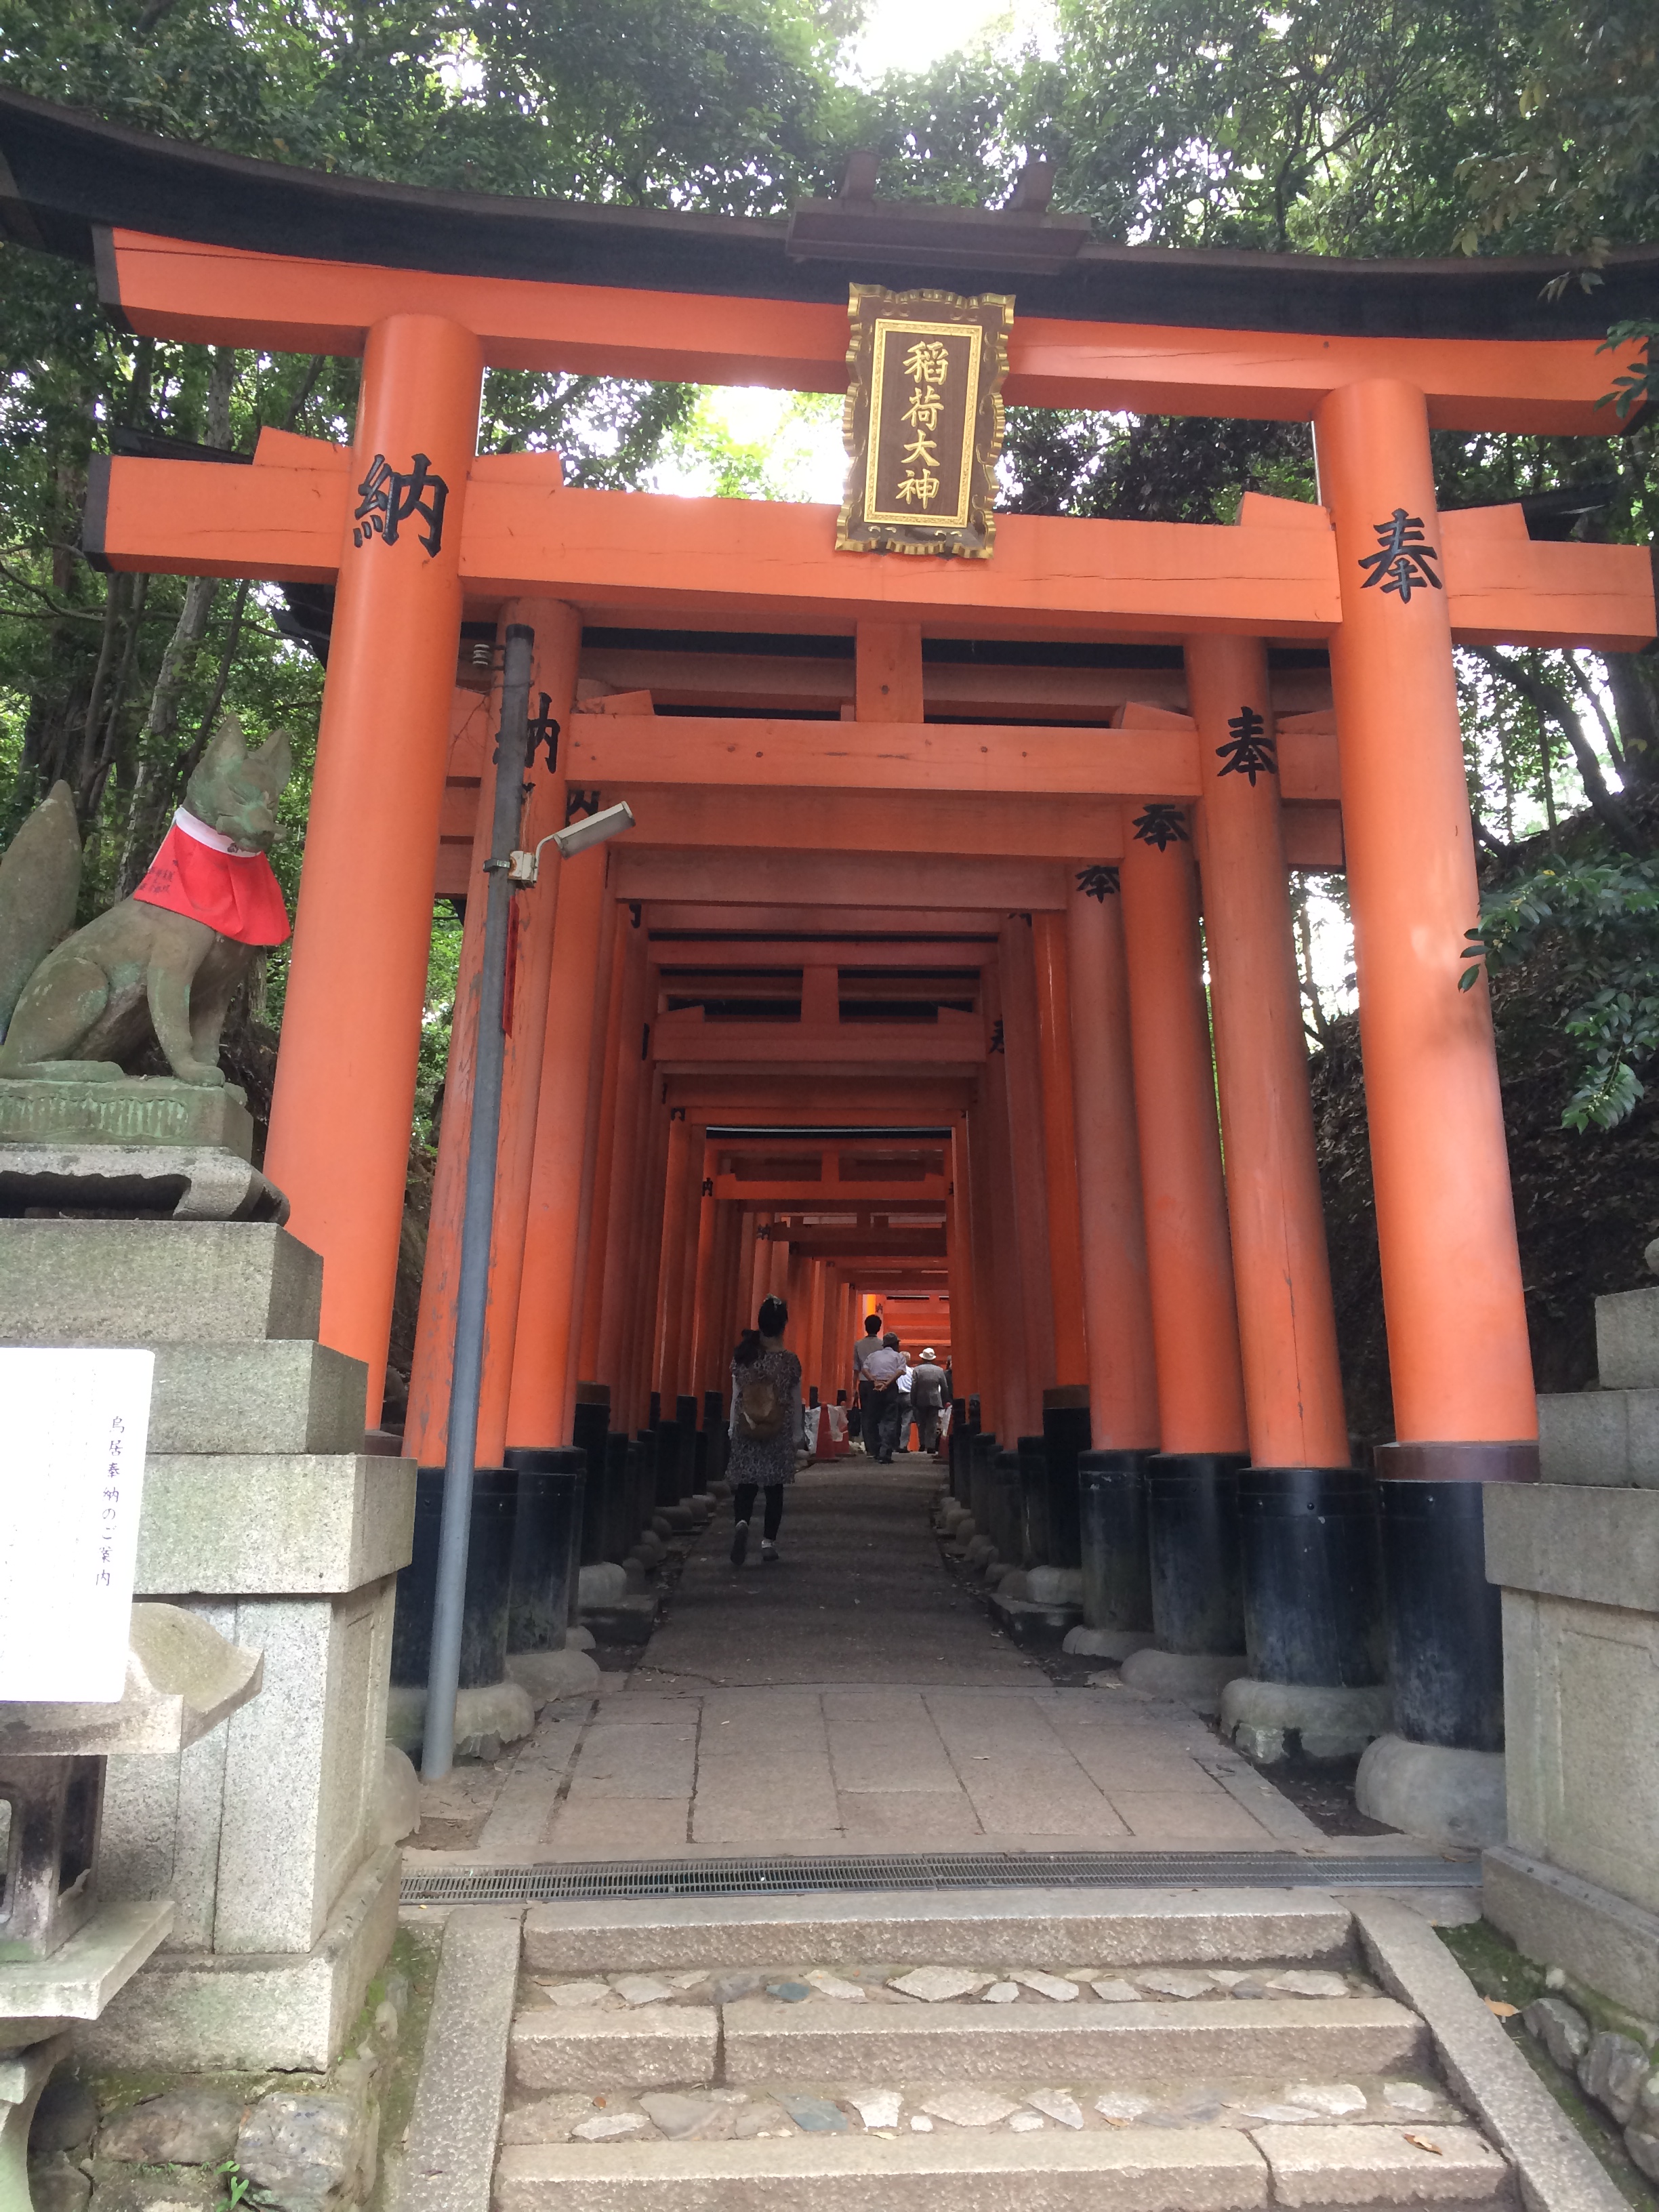 伏见稻荷大社是遍布日本全国3万余座稻荷神社